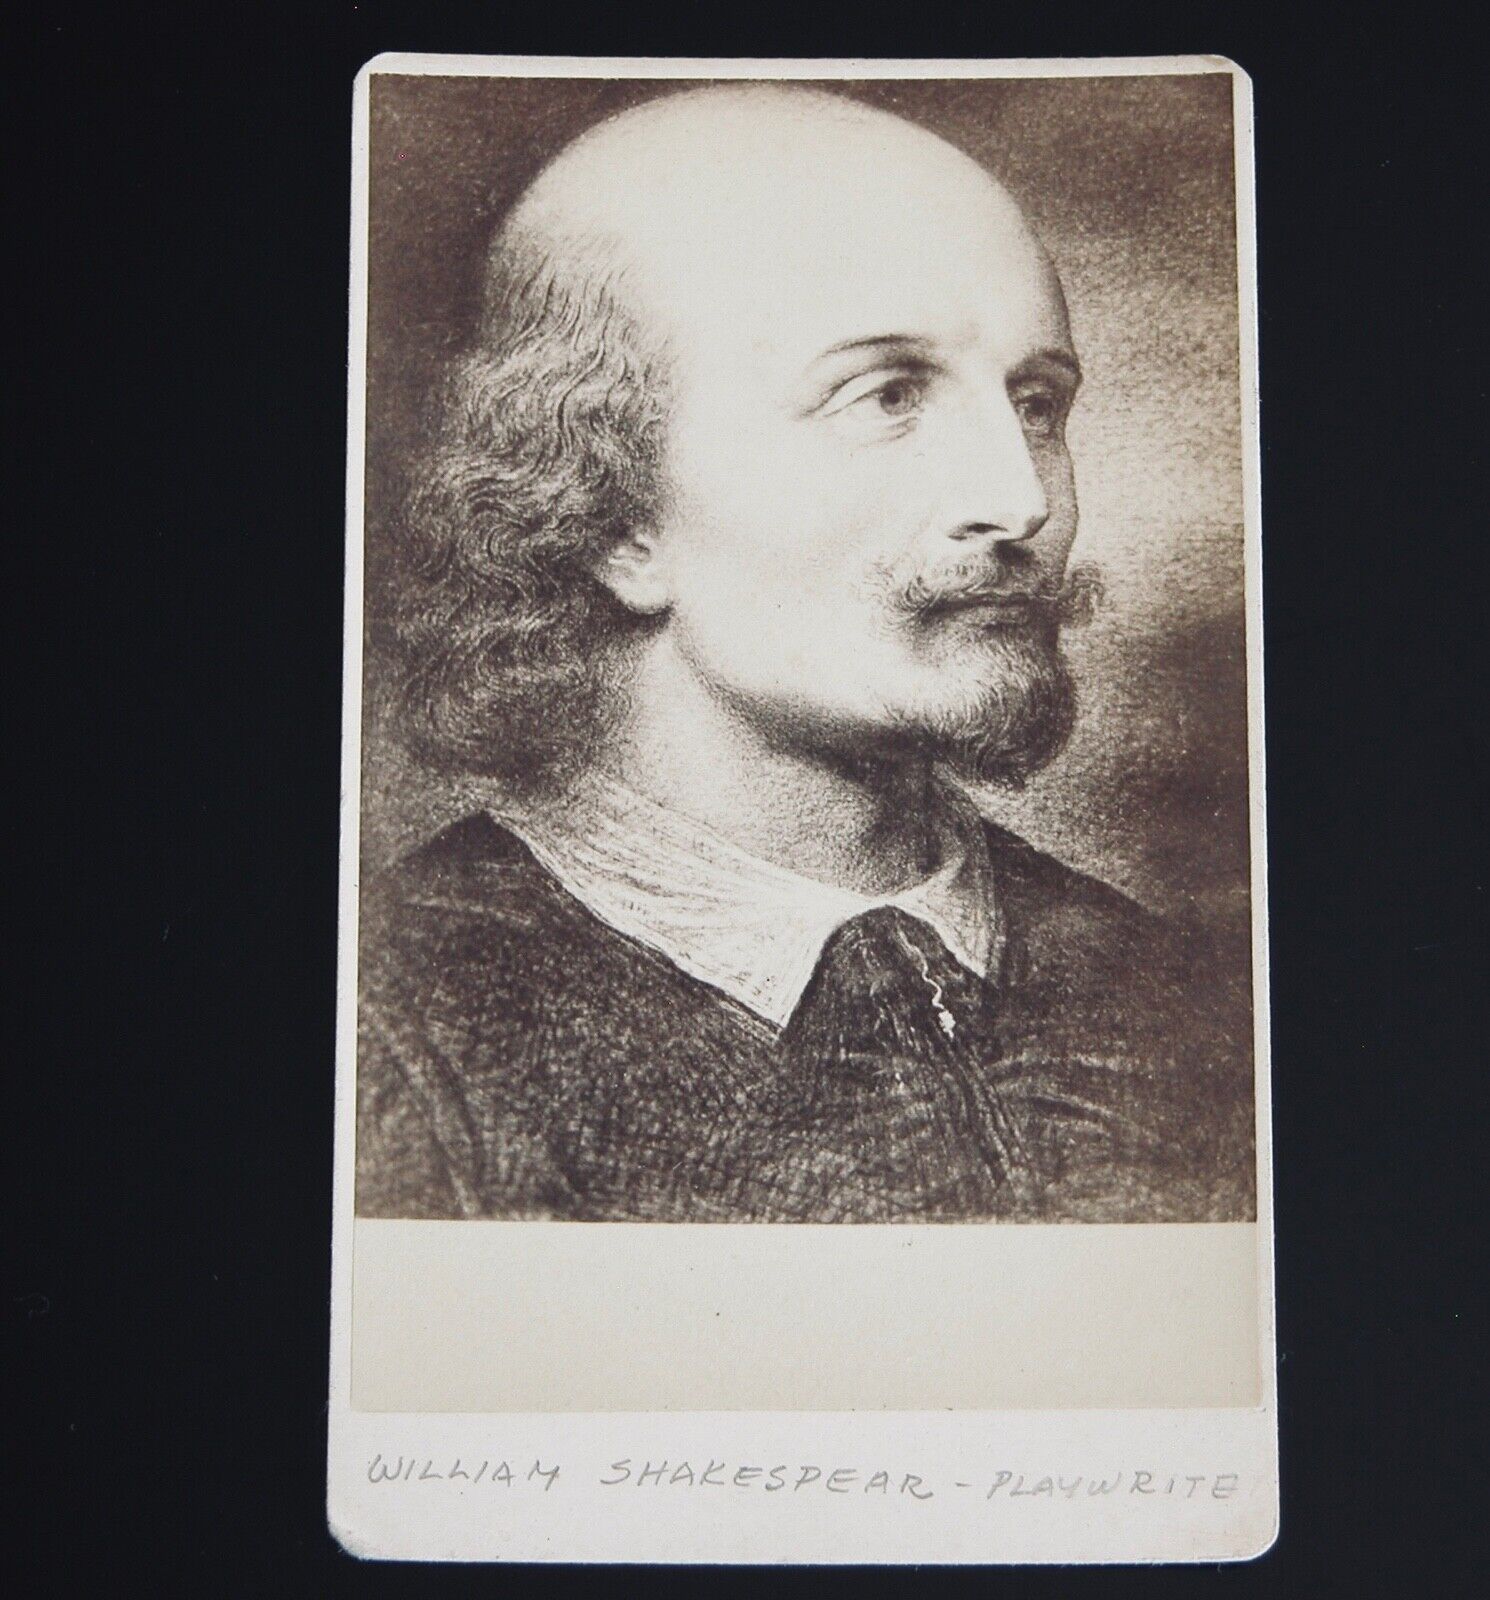 William Shakespear Playwright Poet CDV Portrait Vtg Albumen Print c.1900 RARE